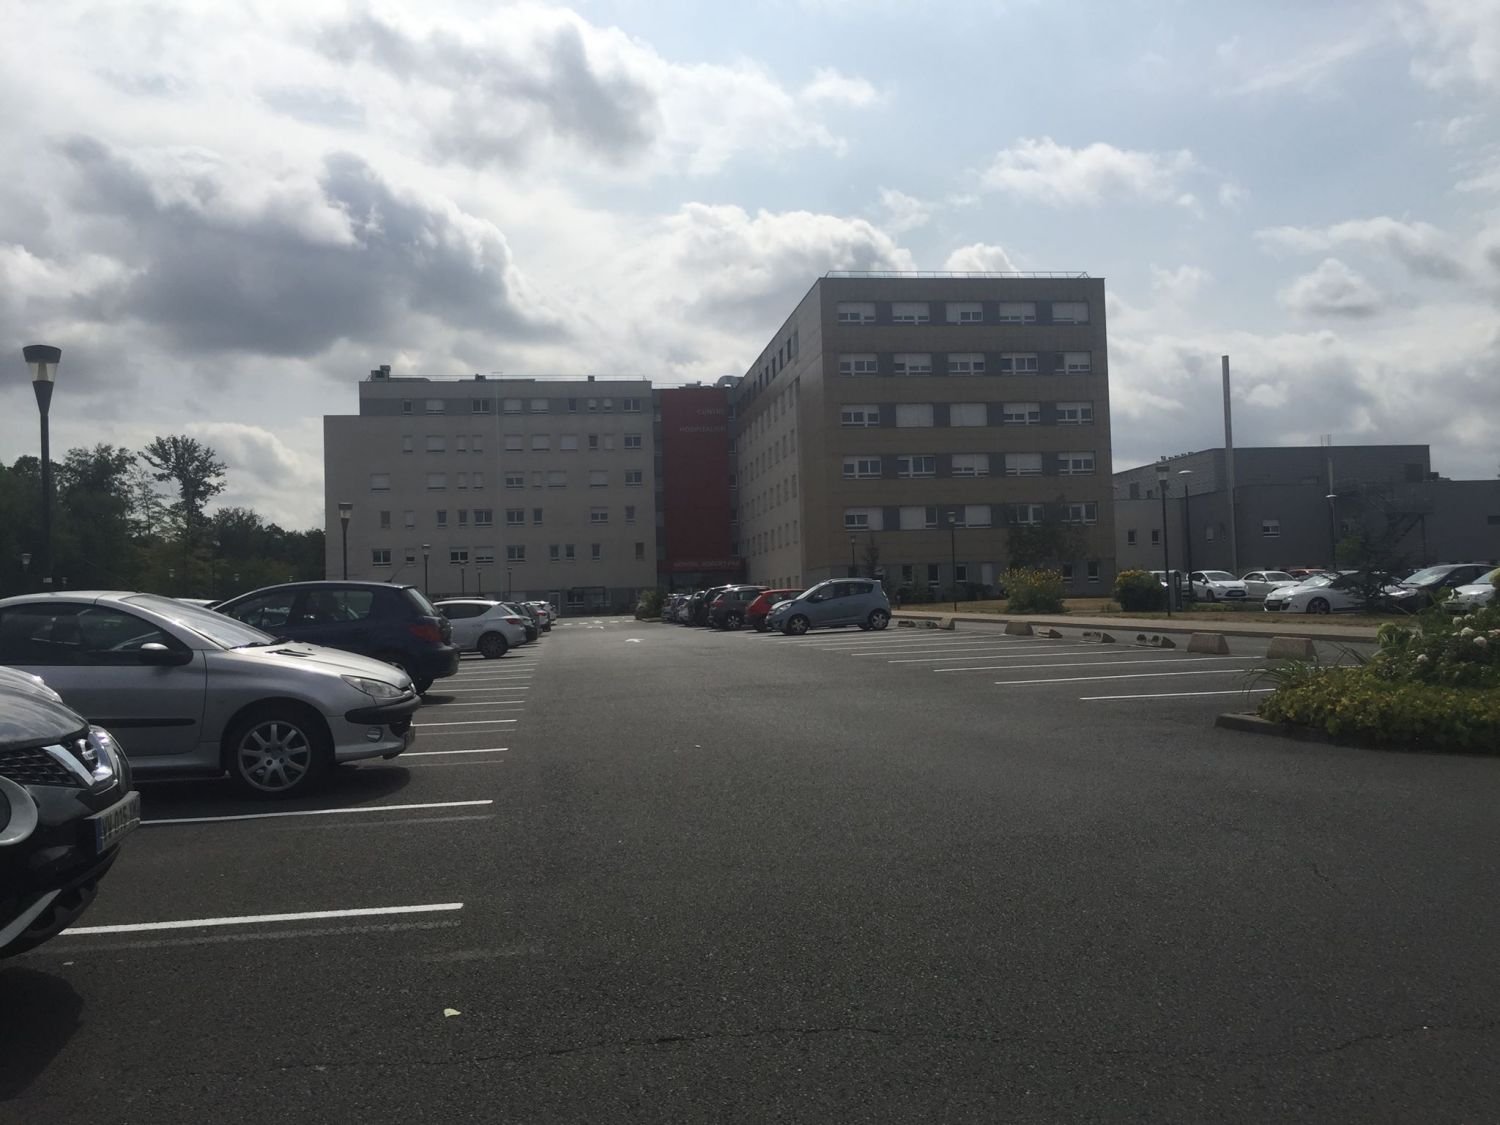 Les hôpitaux publics de Moselle-Est à l’heure de la reprise